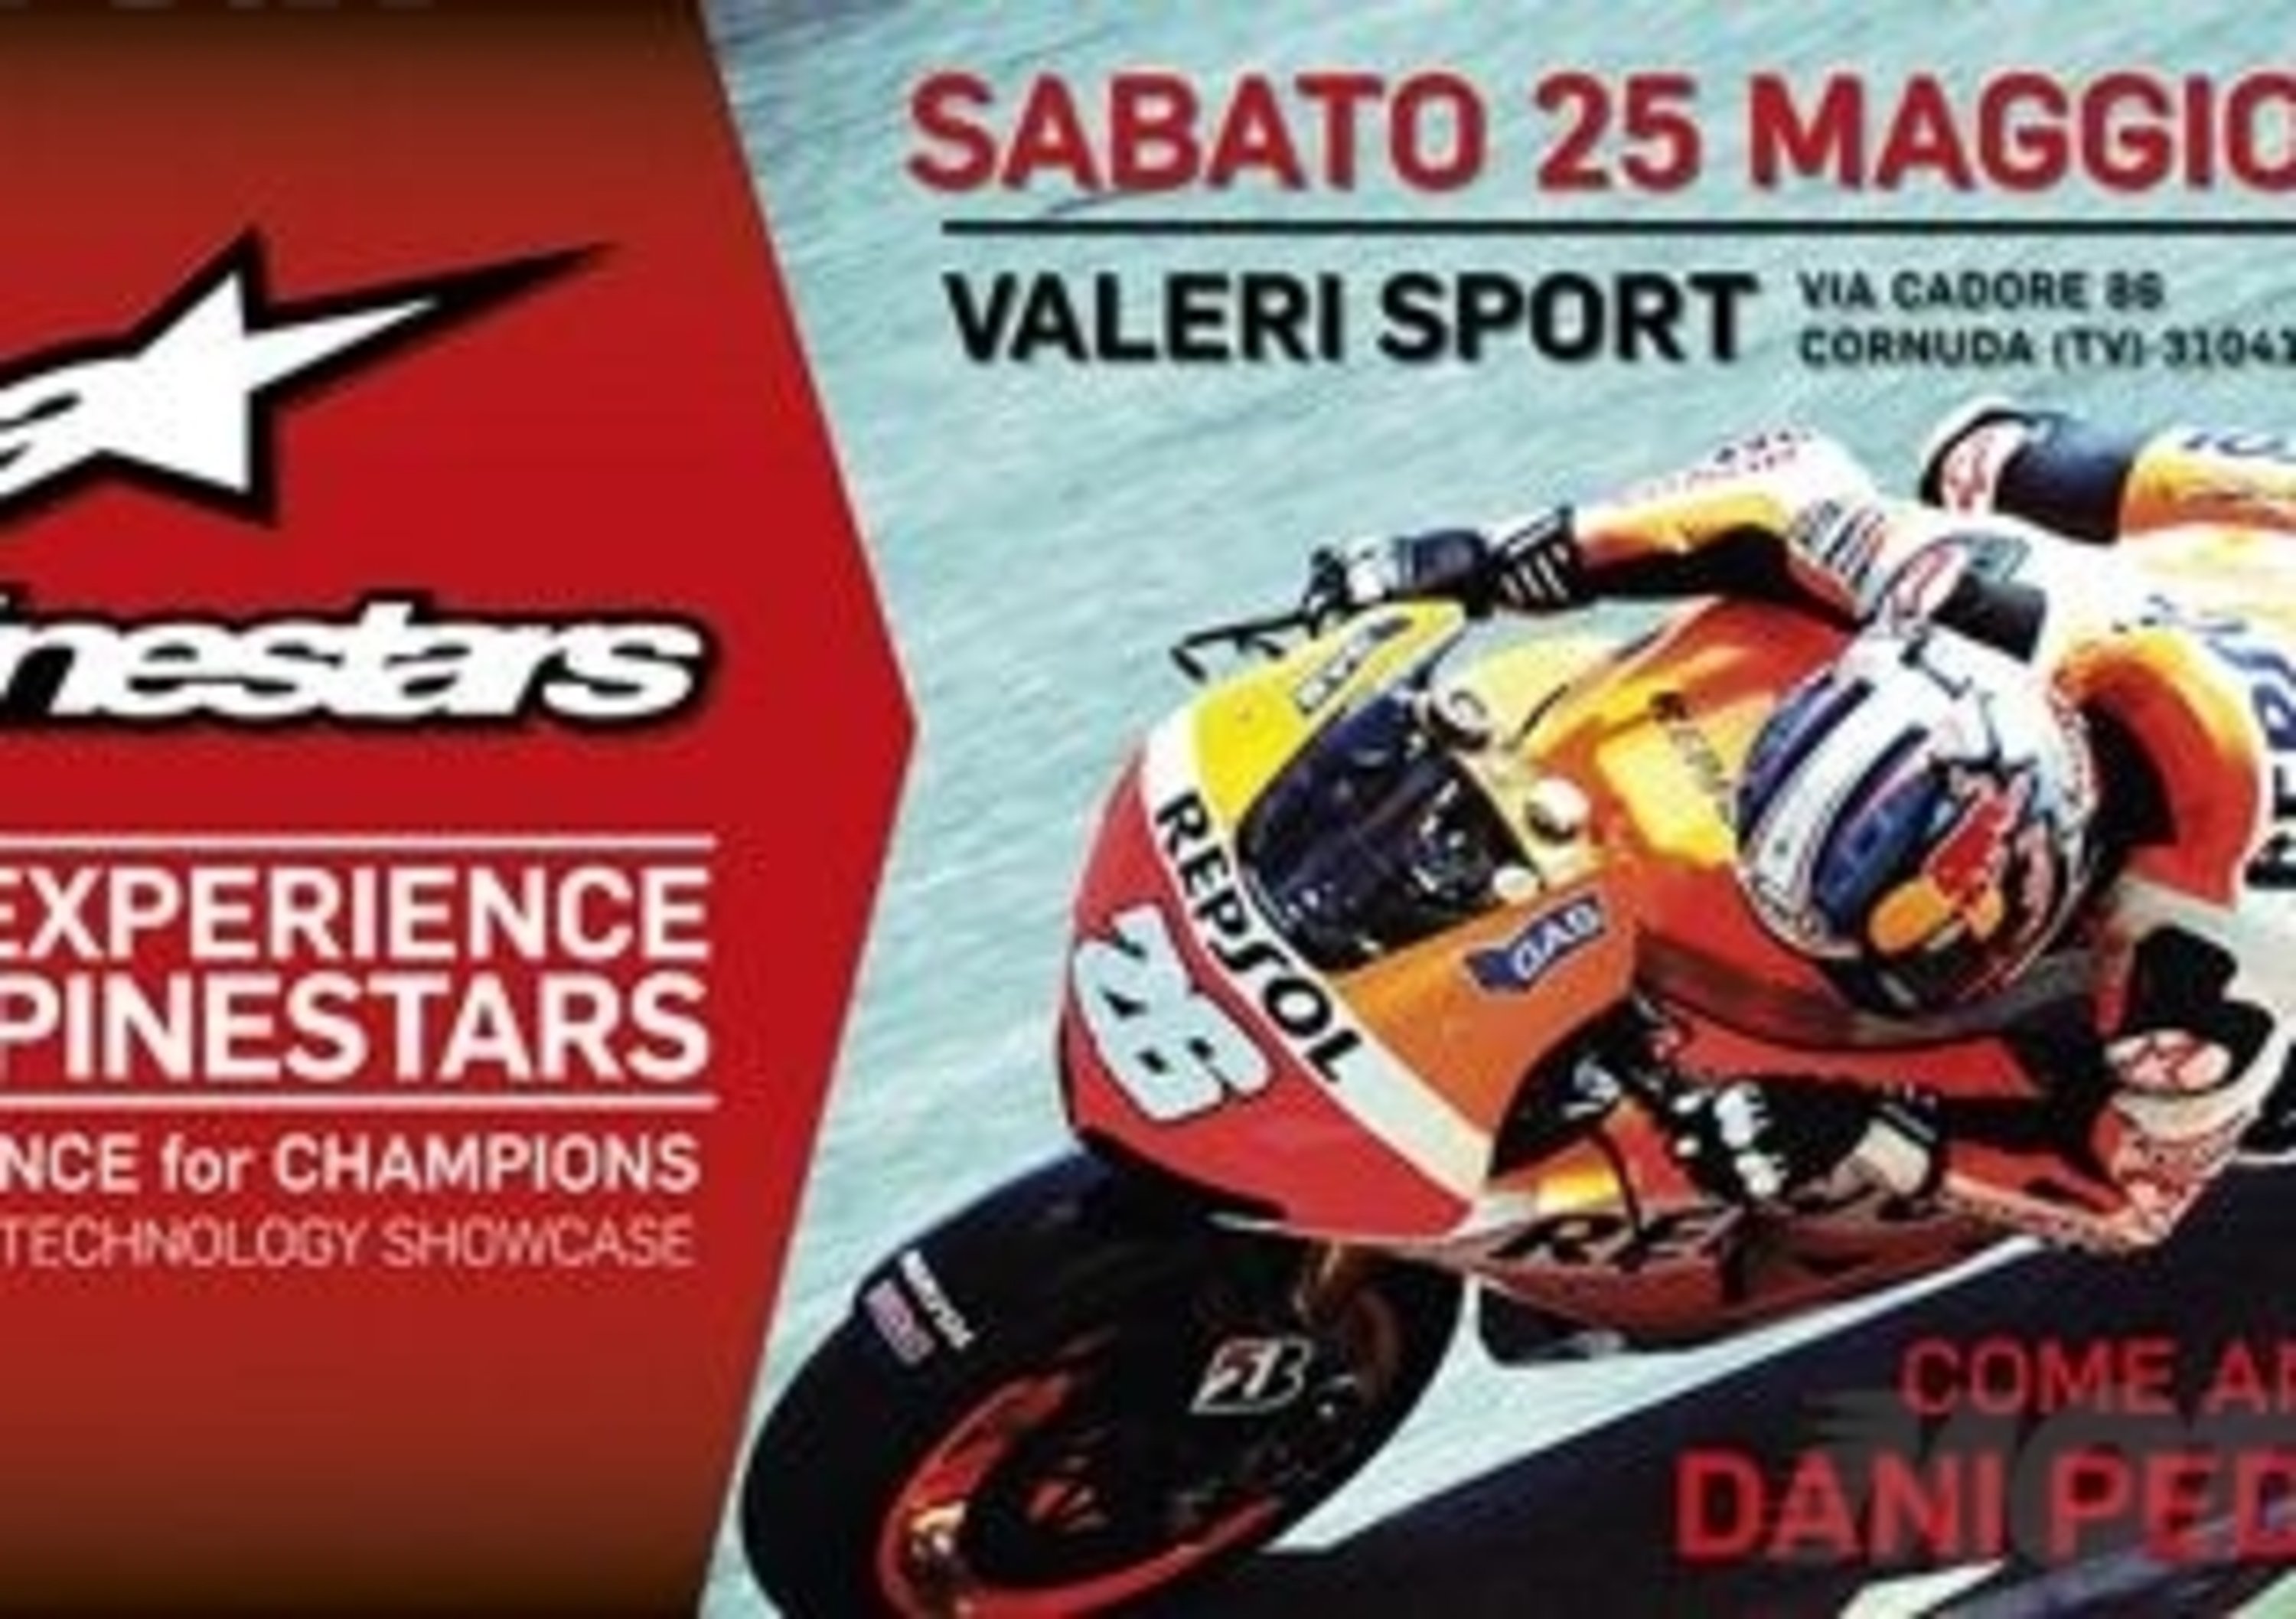 Race Experience by Alpinestars: Dani Pedrosa ospite da Valeri Sport sabato 25 maggio